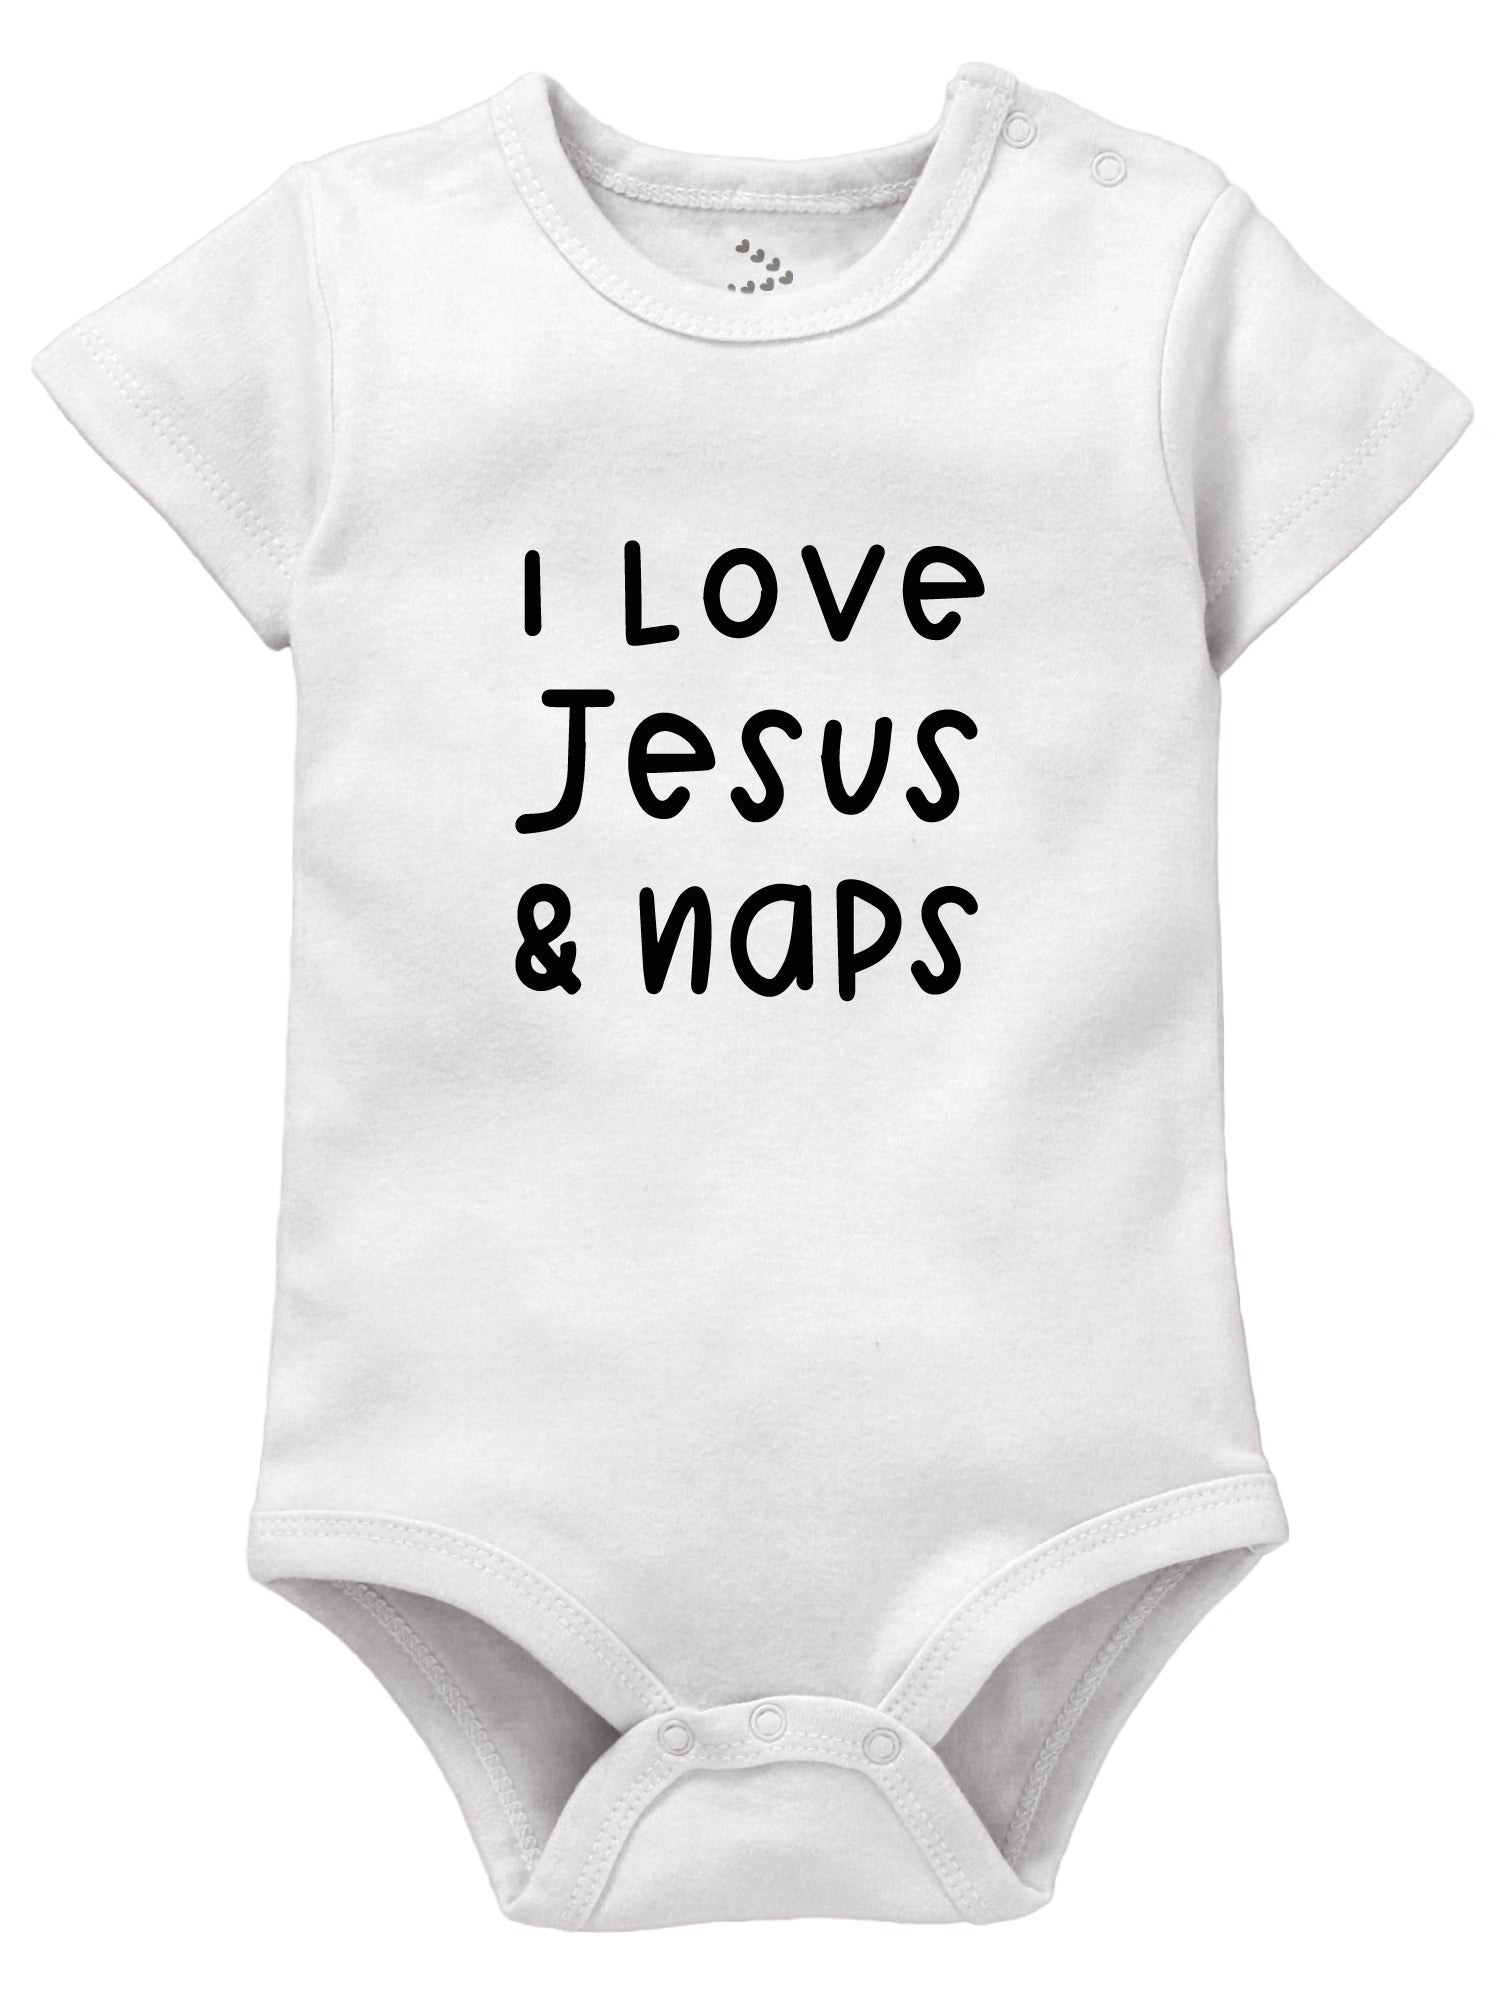 I love Jesus and Naps - Onesie